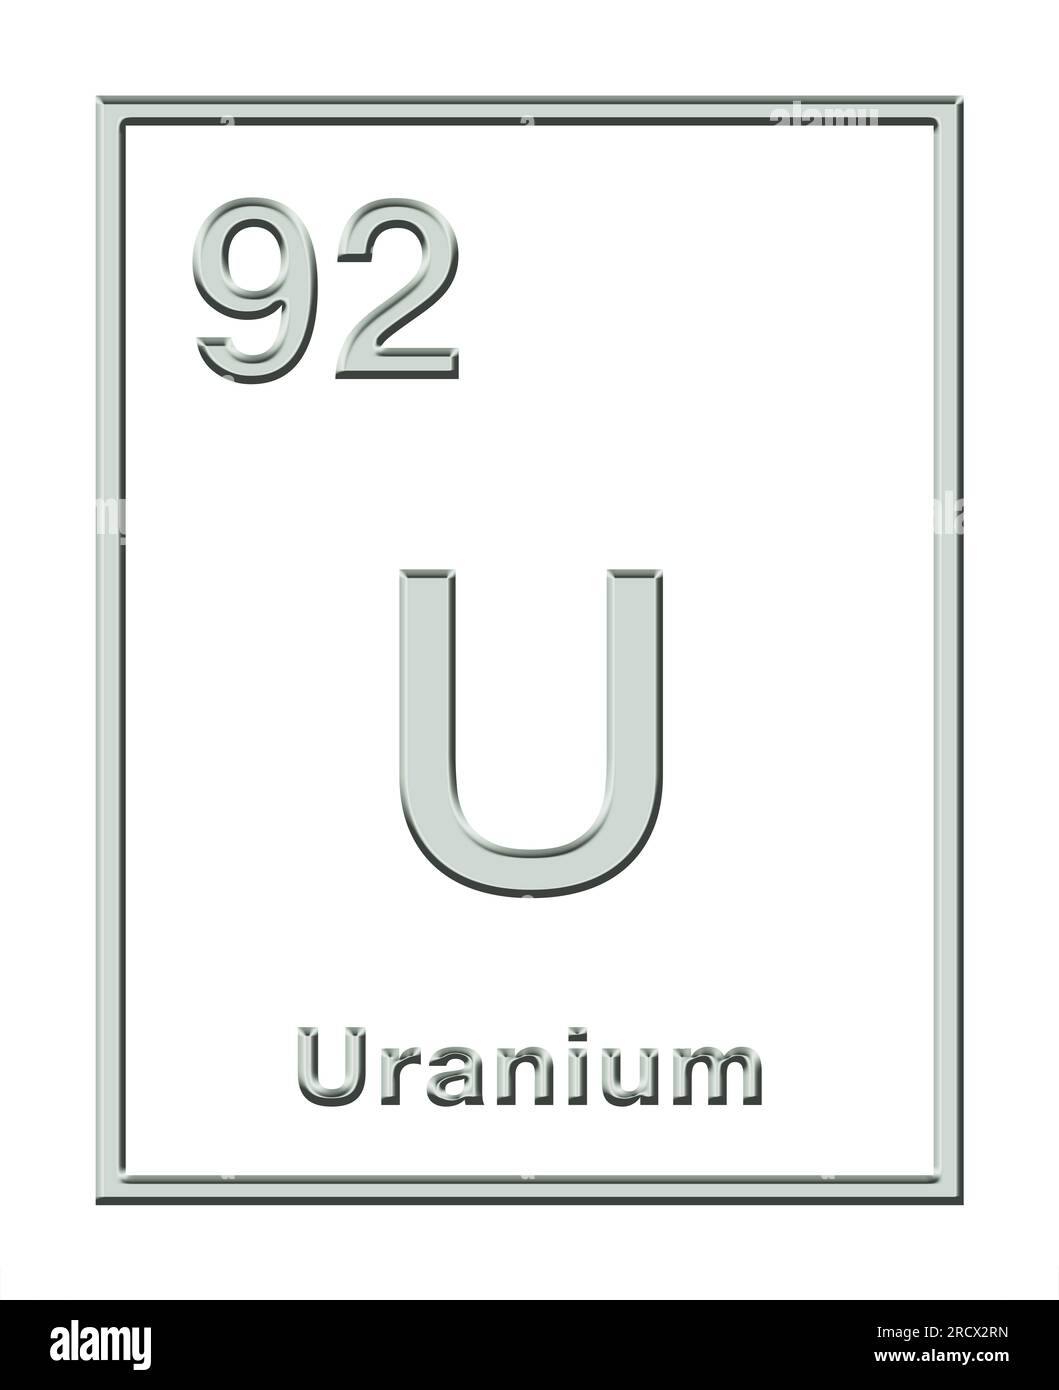 Uranio, elemento chimico, tratto da tavola periodica, con forma di rilievo. Metallo radioattivo con simbolo dell'elemento U e numero atomico 92. Foto Stock